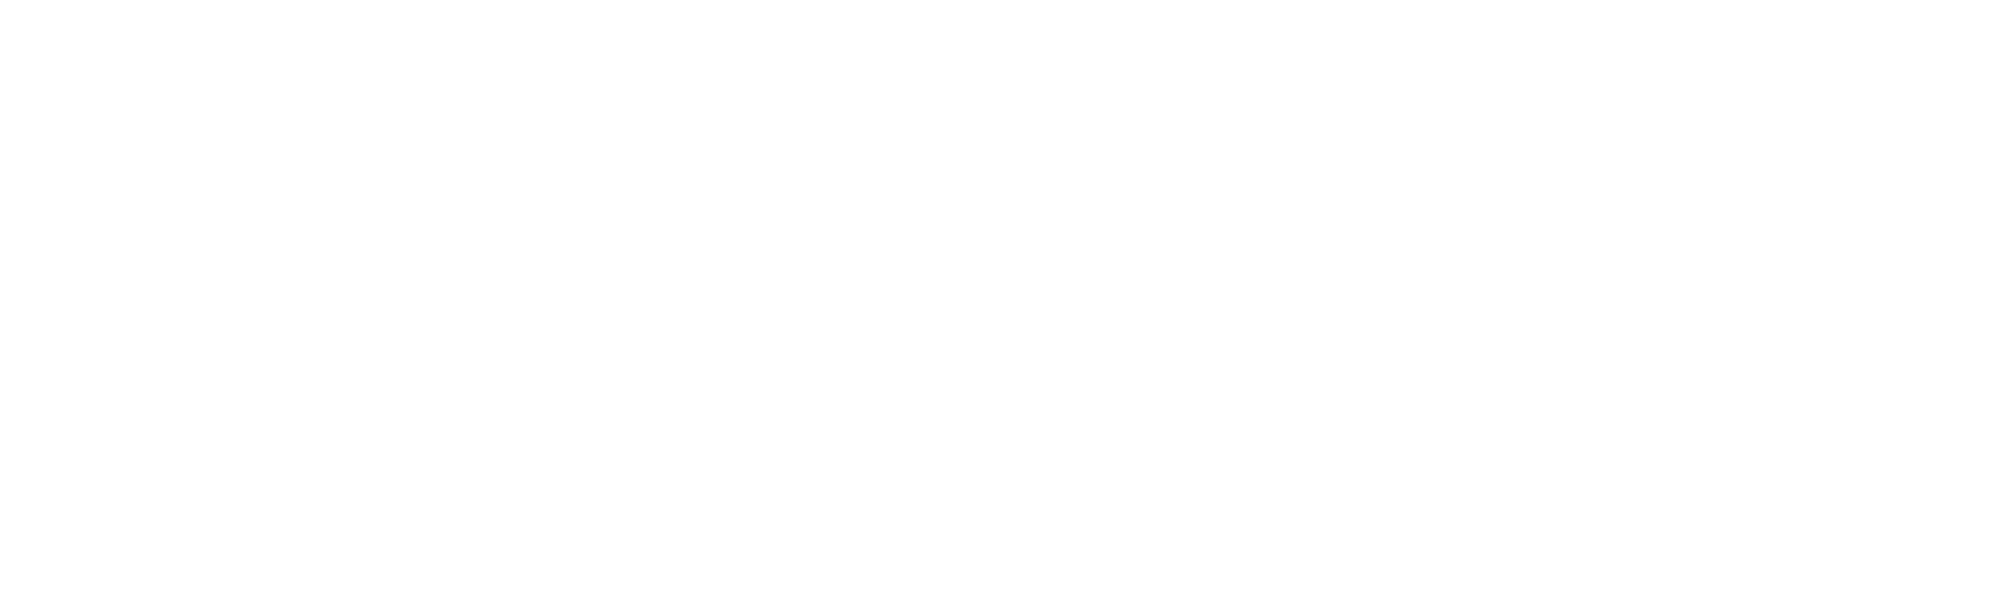 Logo vins de Bordeaux